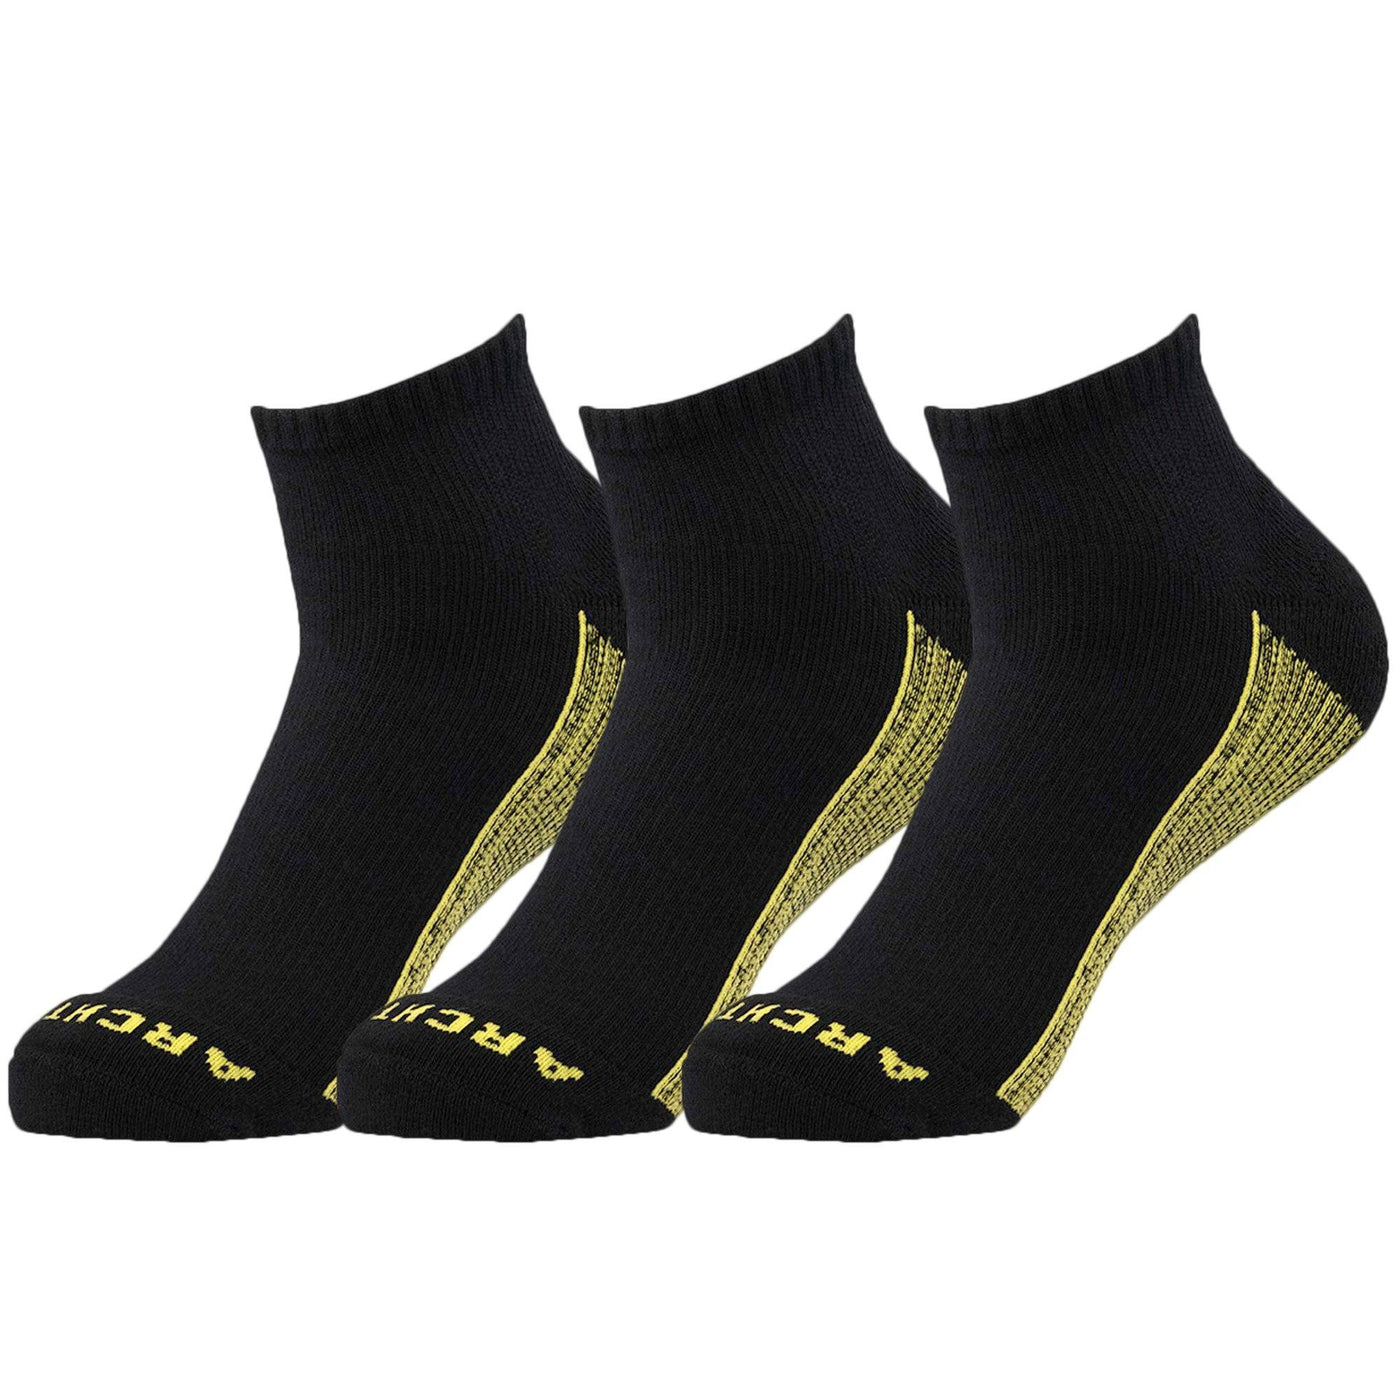 Athletic Quarter Sock 3-Pack in Black athletic socks ArchTek Men's Medium (sizes US 6-9.5) Black